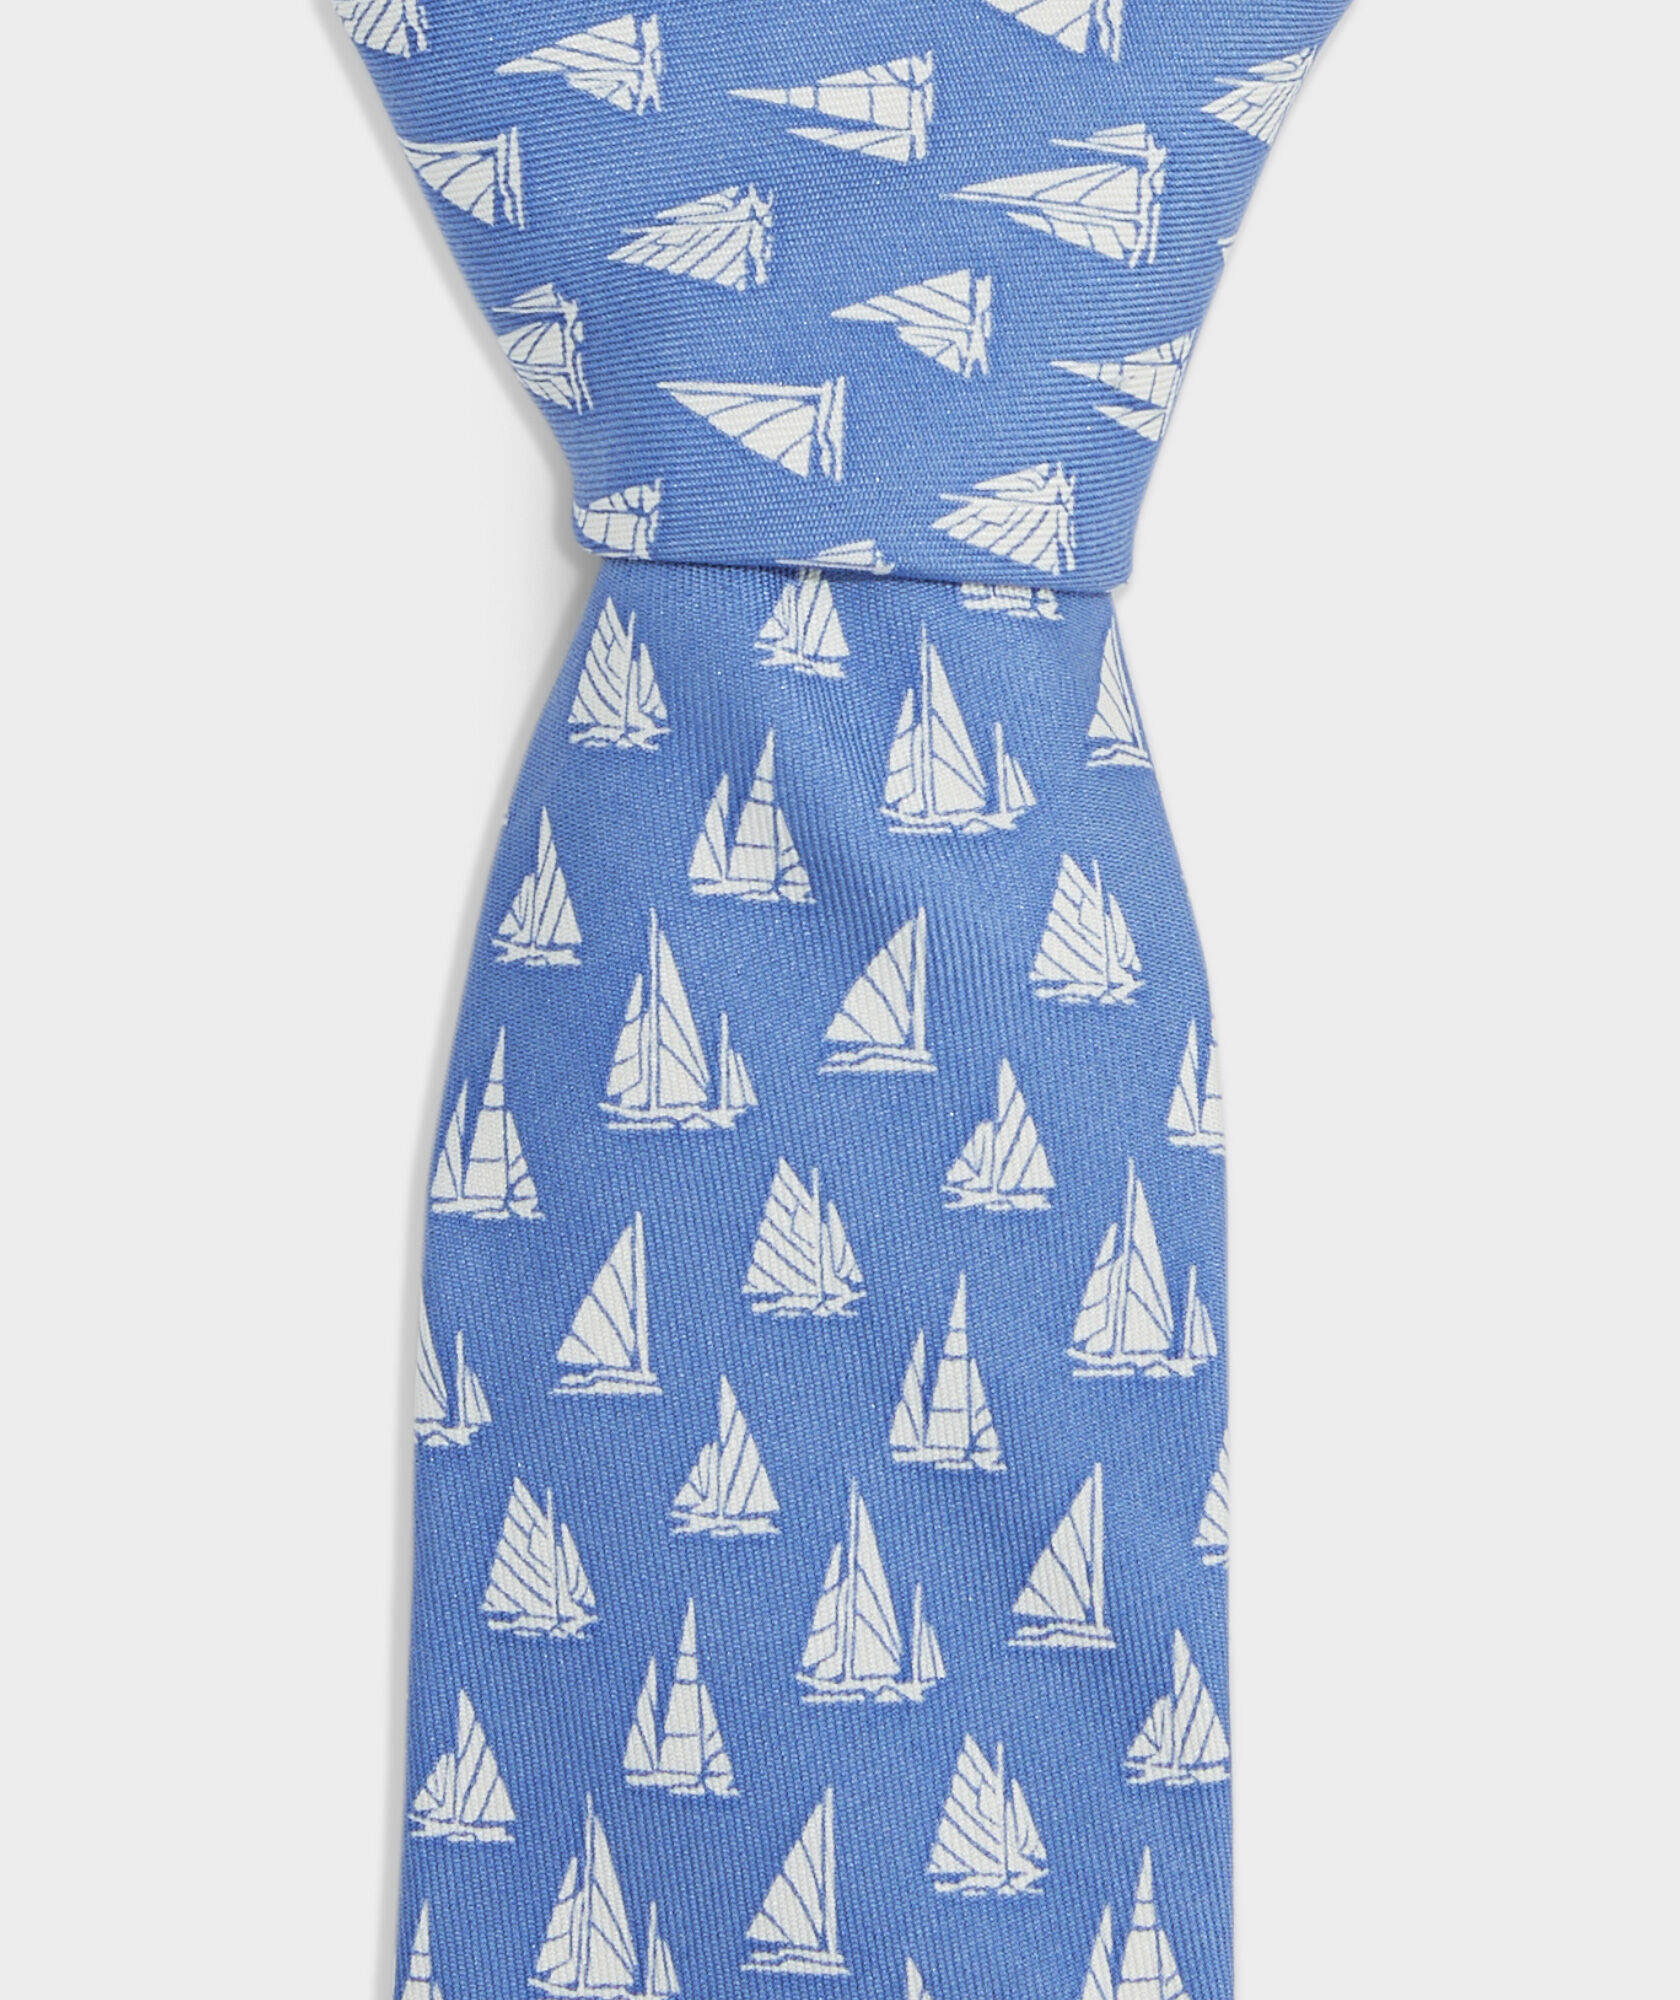 Boys' Boat Parade Printed Tie